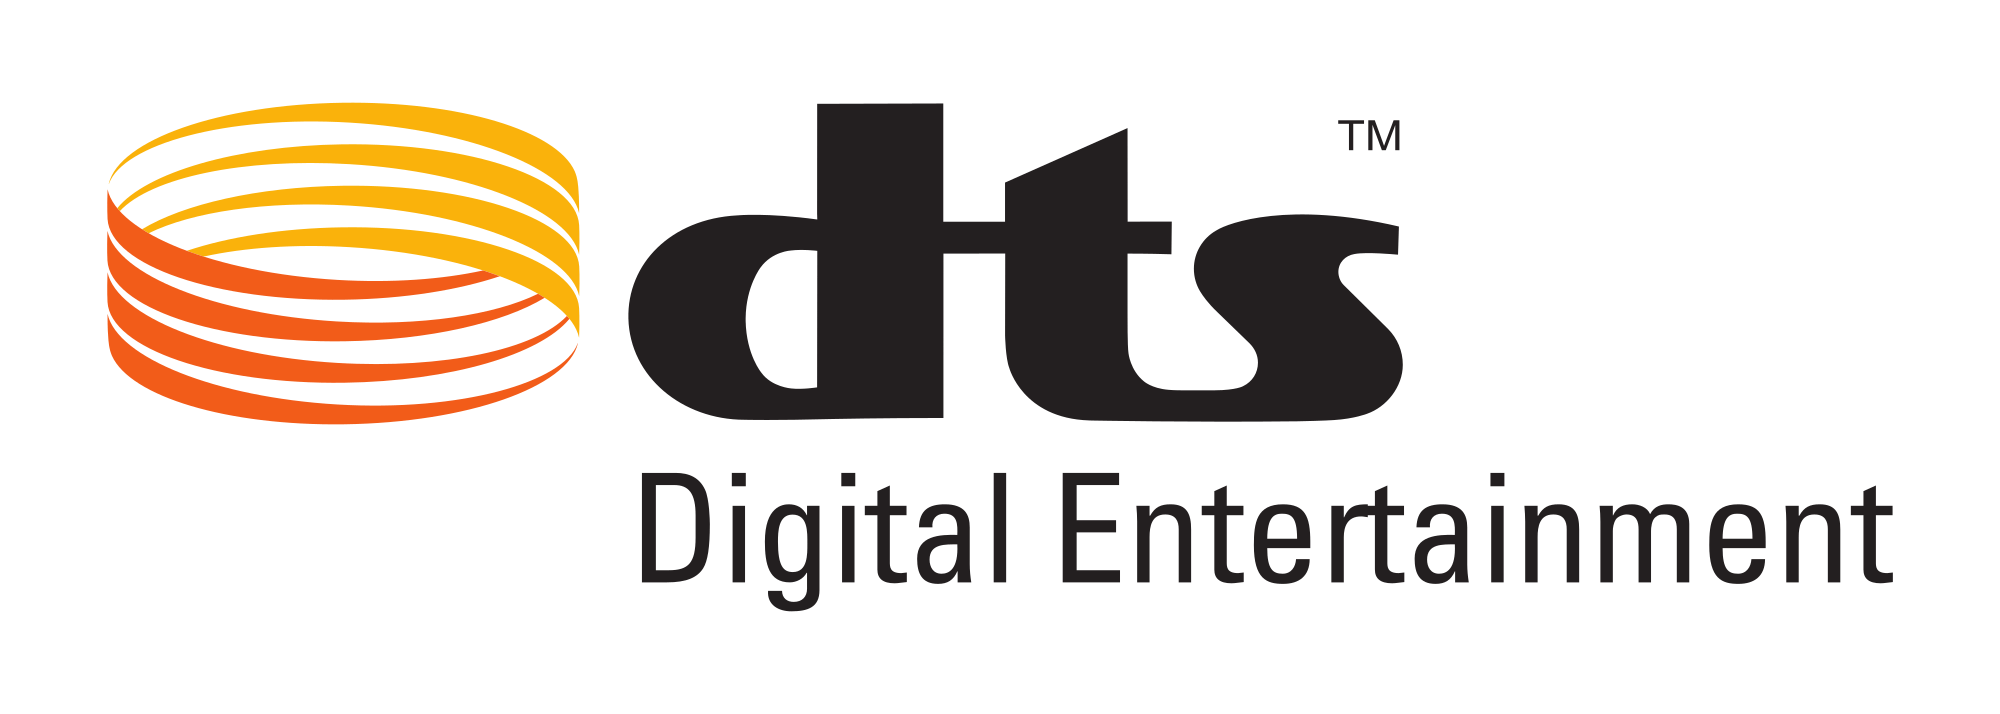 DTS Logo - Dts D.E. logo.svg